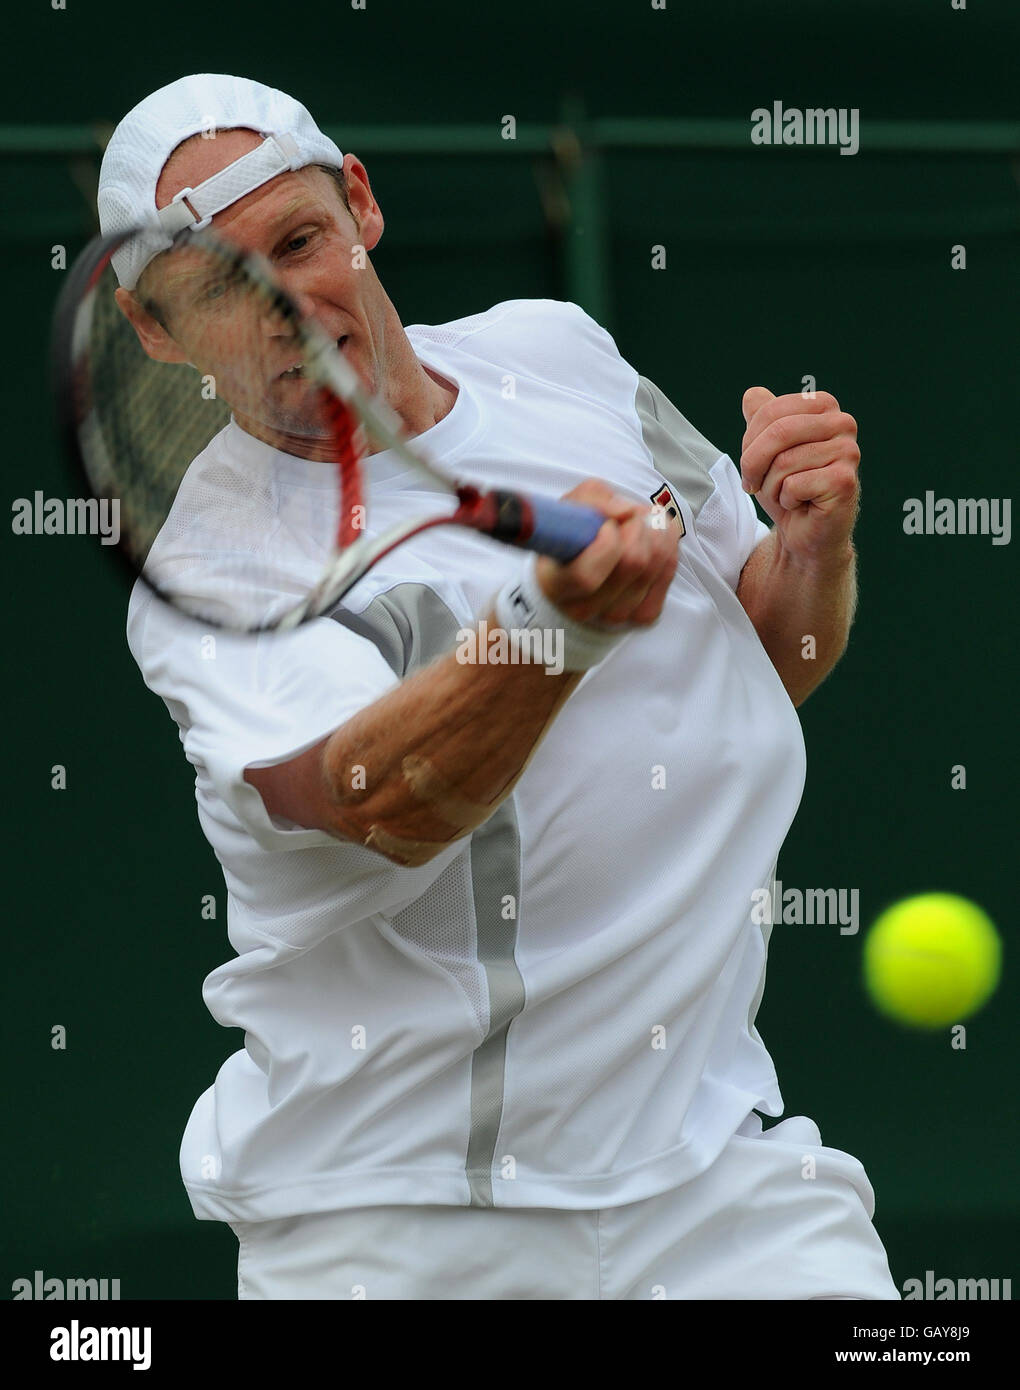 Der deutsche Rainer Schuettler im Einsatz gegen den US-amerikanischen James Blake während der Wimbledon Championships 2008 im All England Tennis Club in Wimbledon. Stockfoto